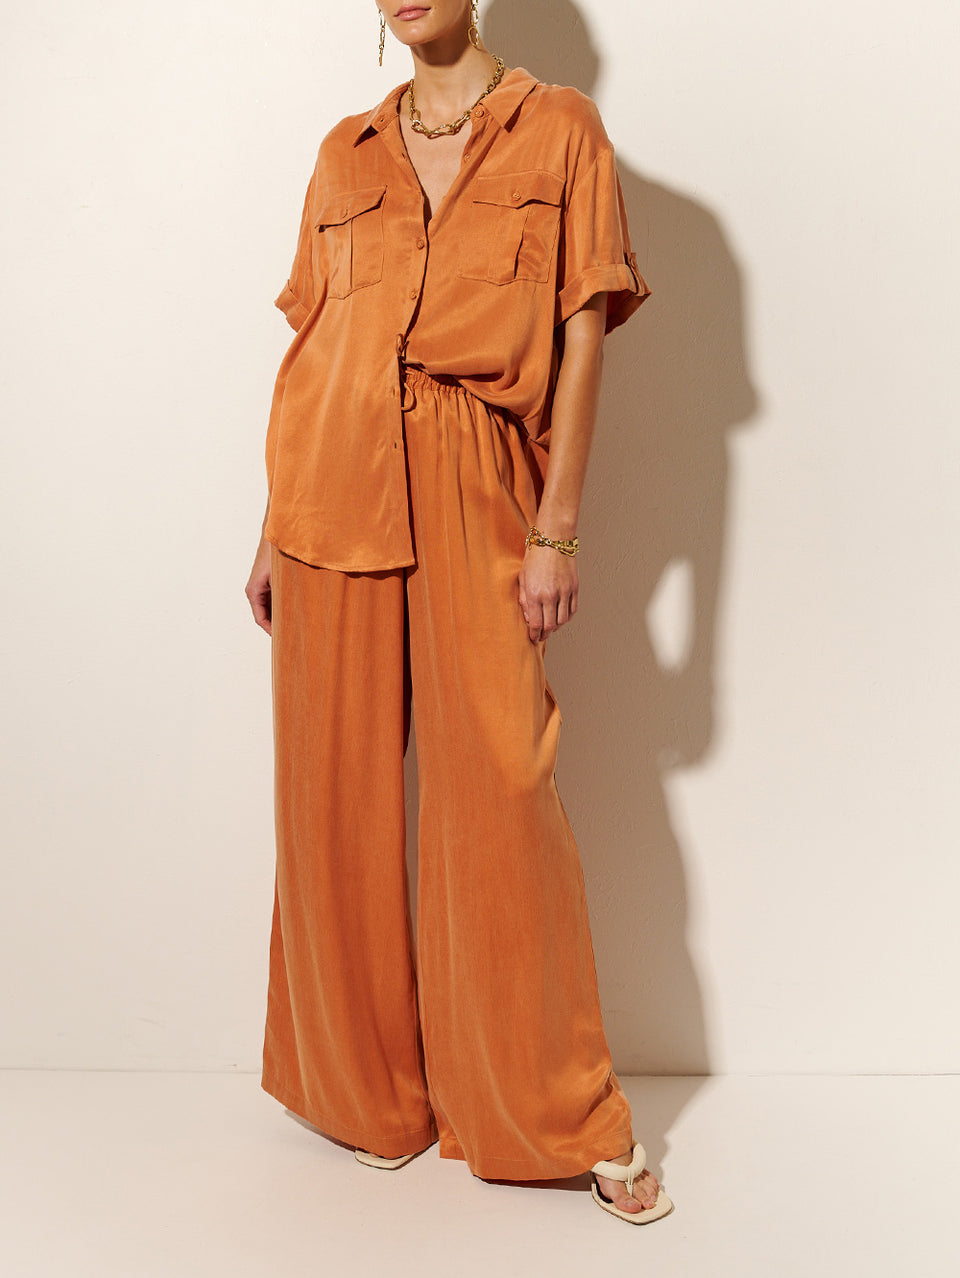 KIVARI Bianca Pant | Model wears Orange Pant